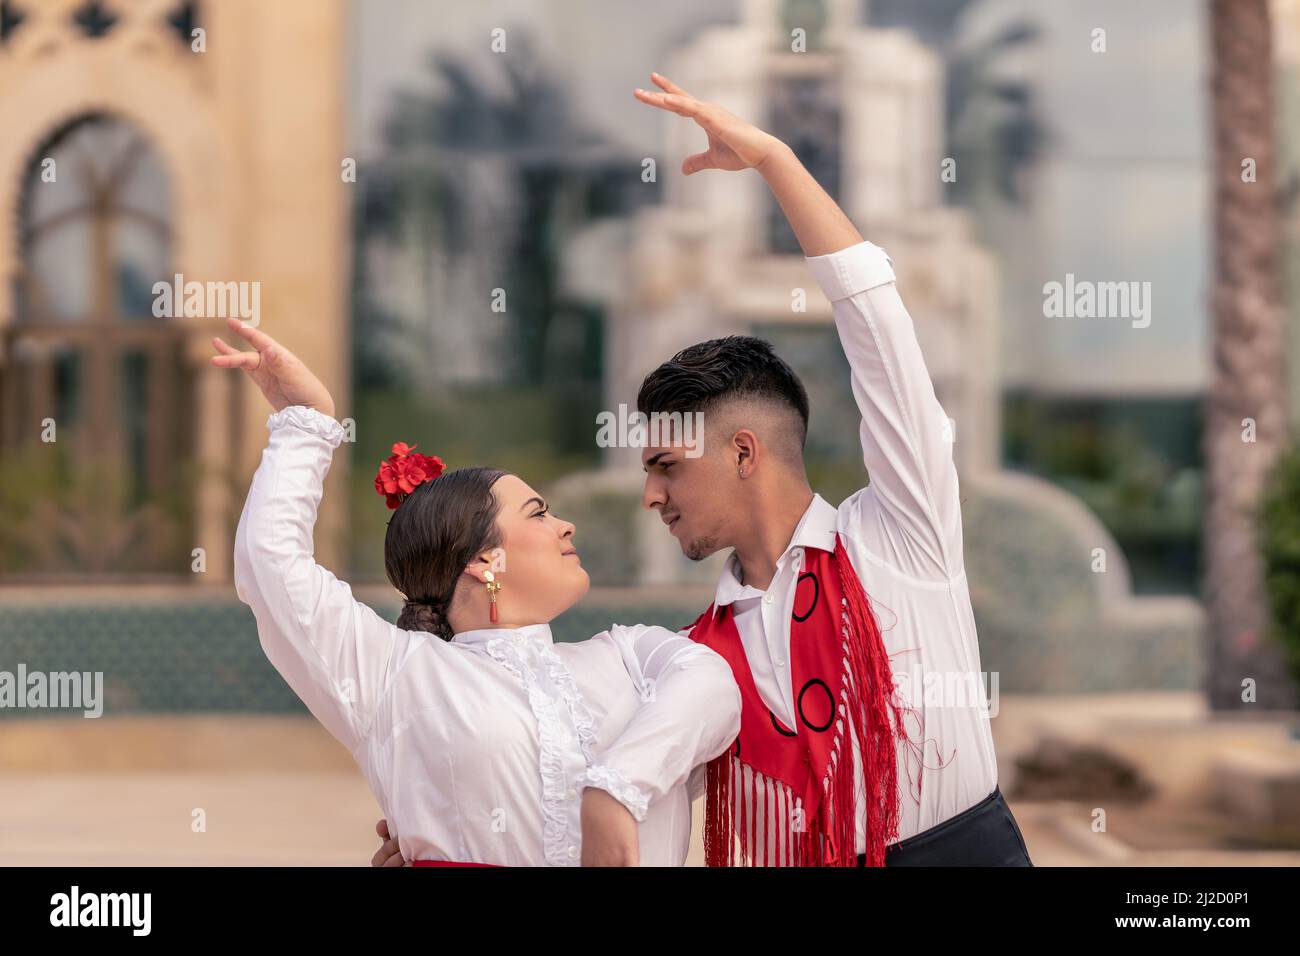 il giovane ballerino spagnolo di flamenco abbraccia il suo compagno mentre ballano Foto Stock